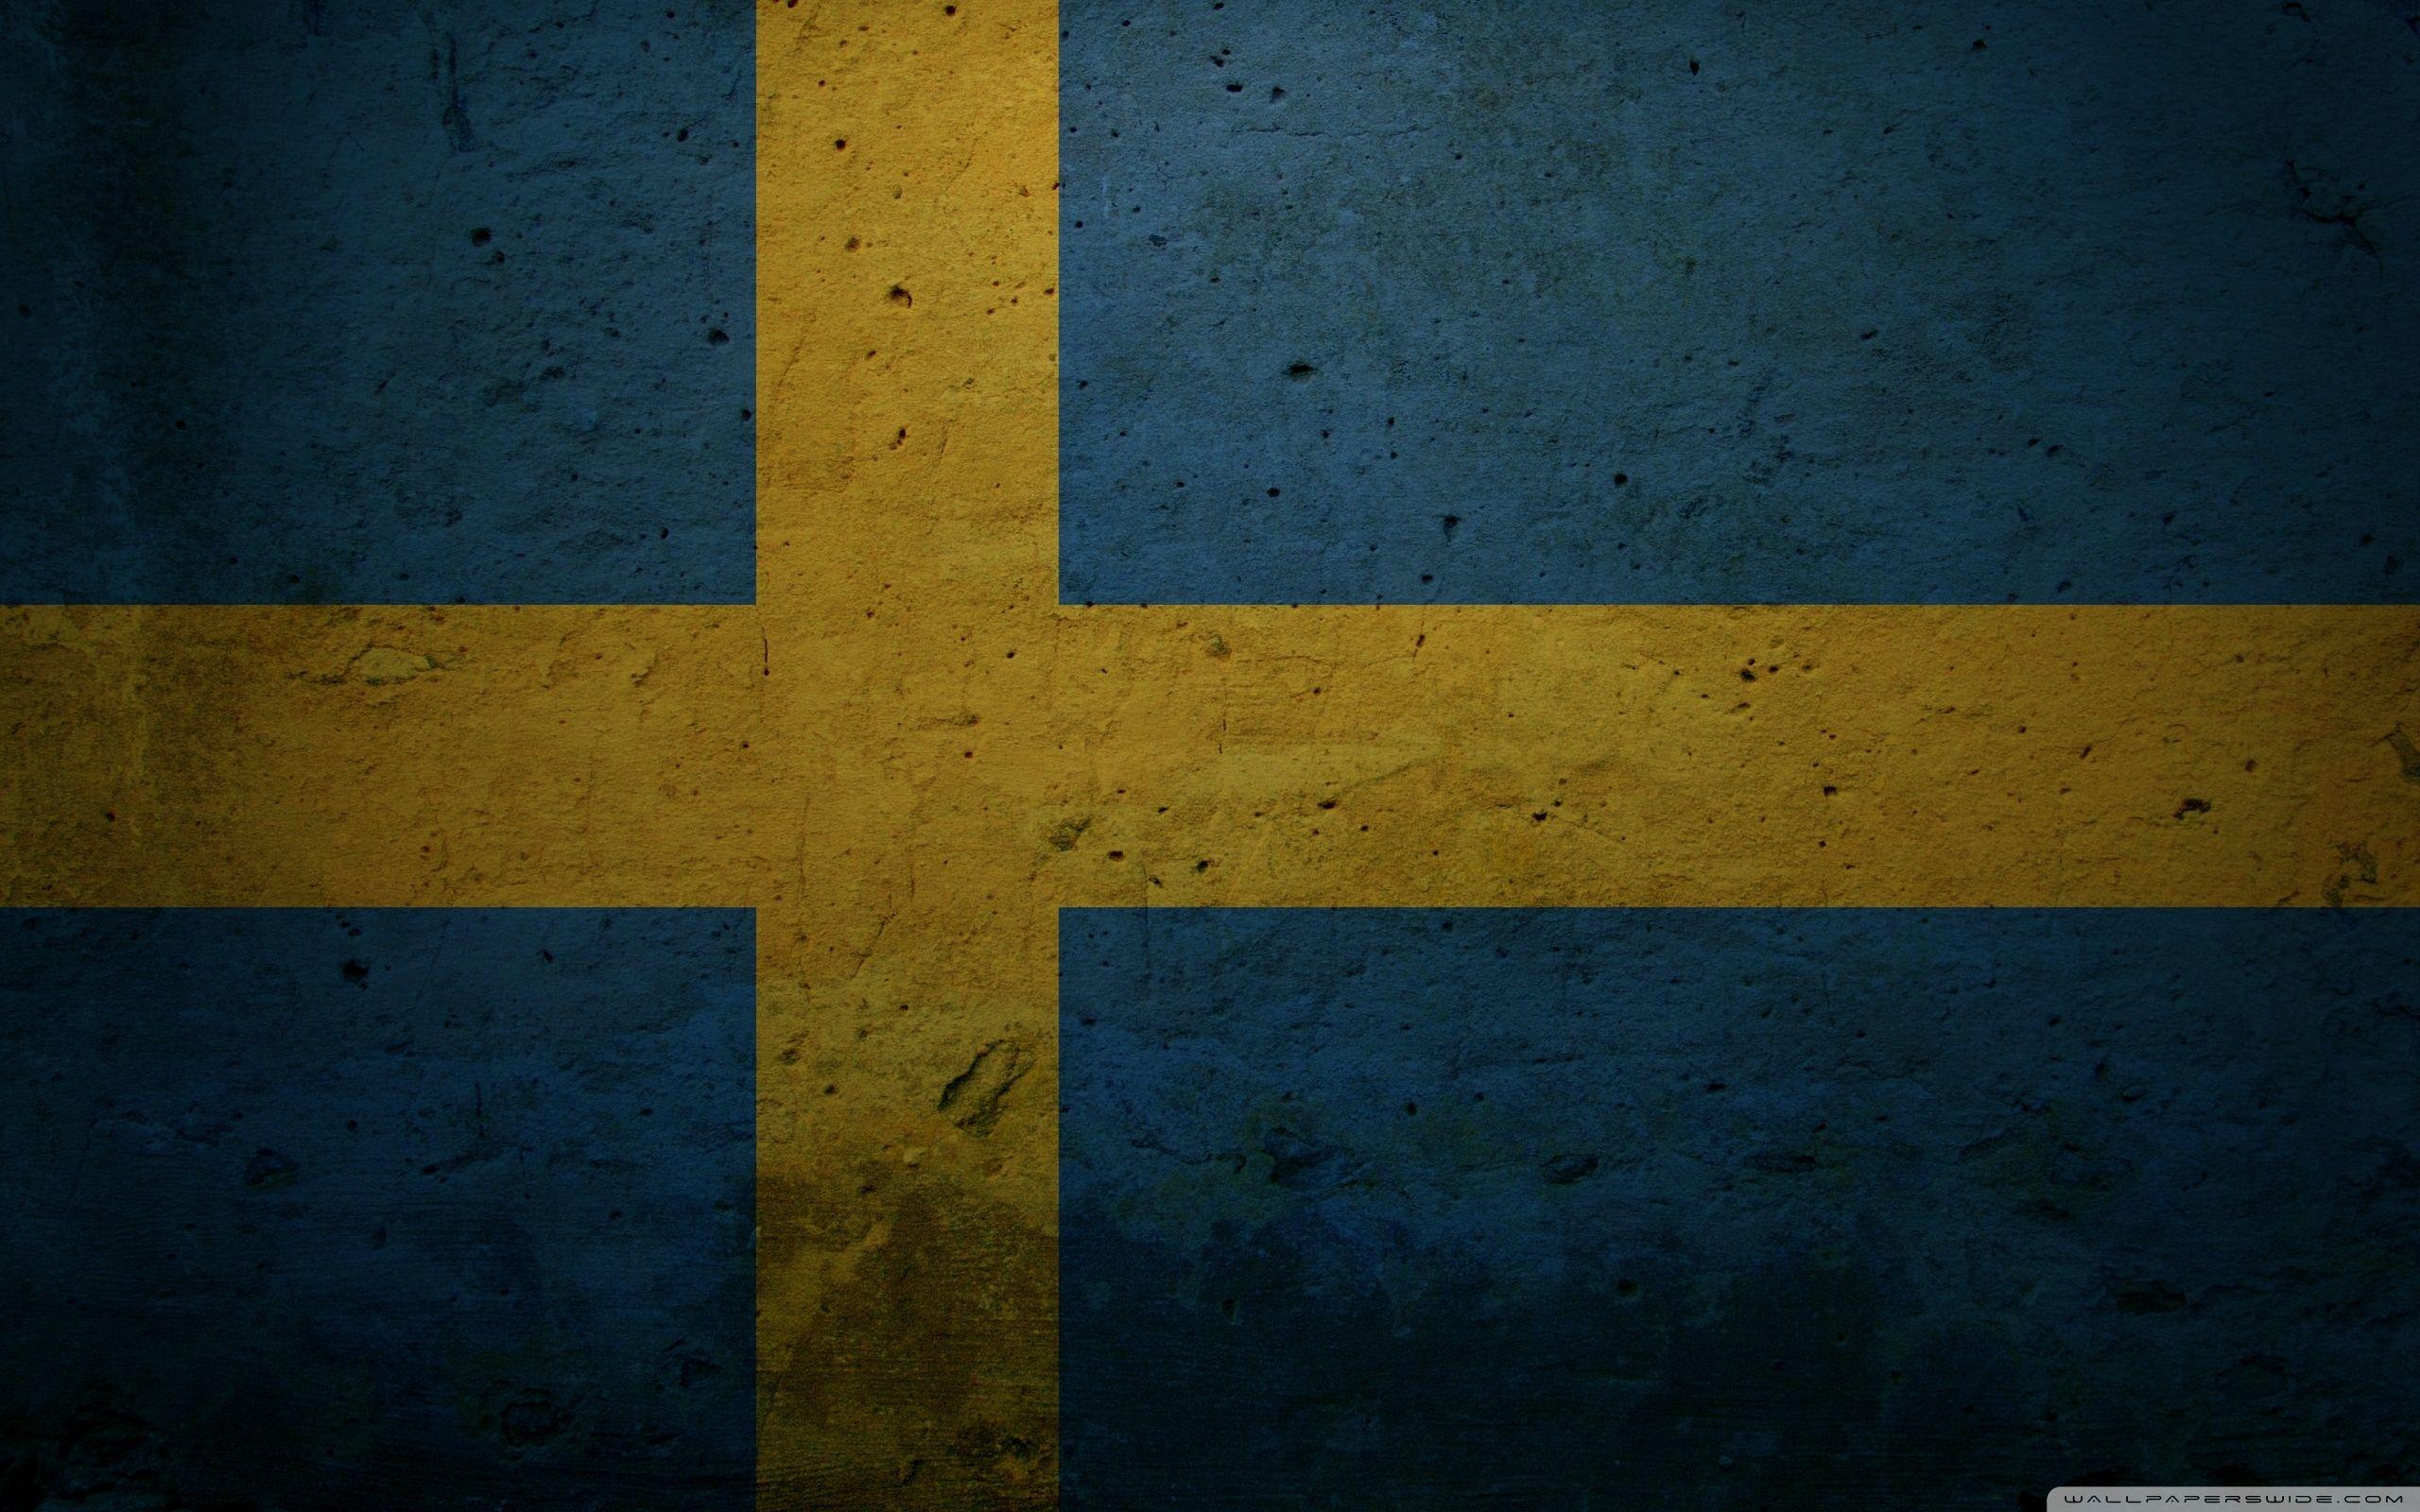 پرچم سوئد (Sweden Flag)